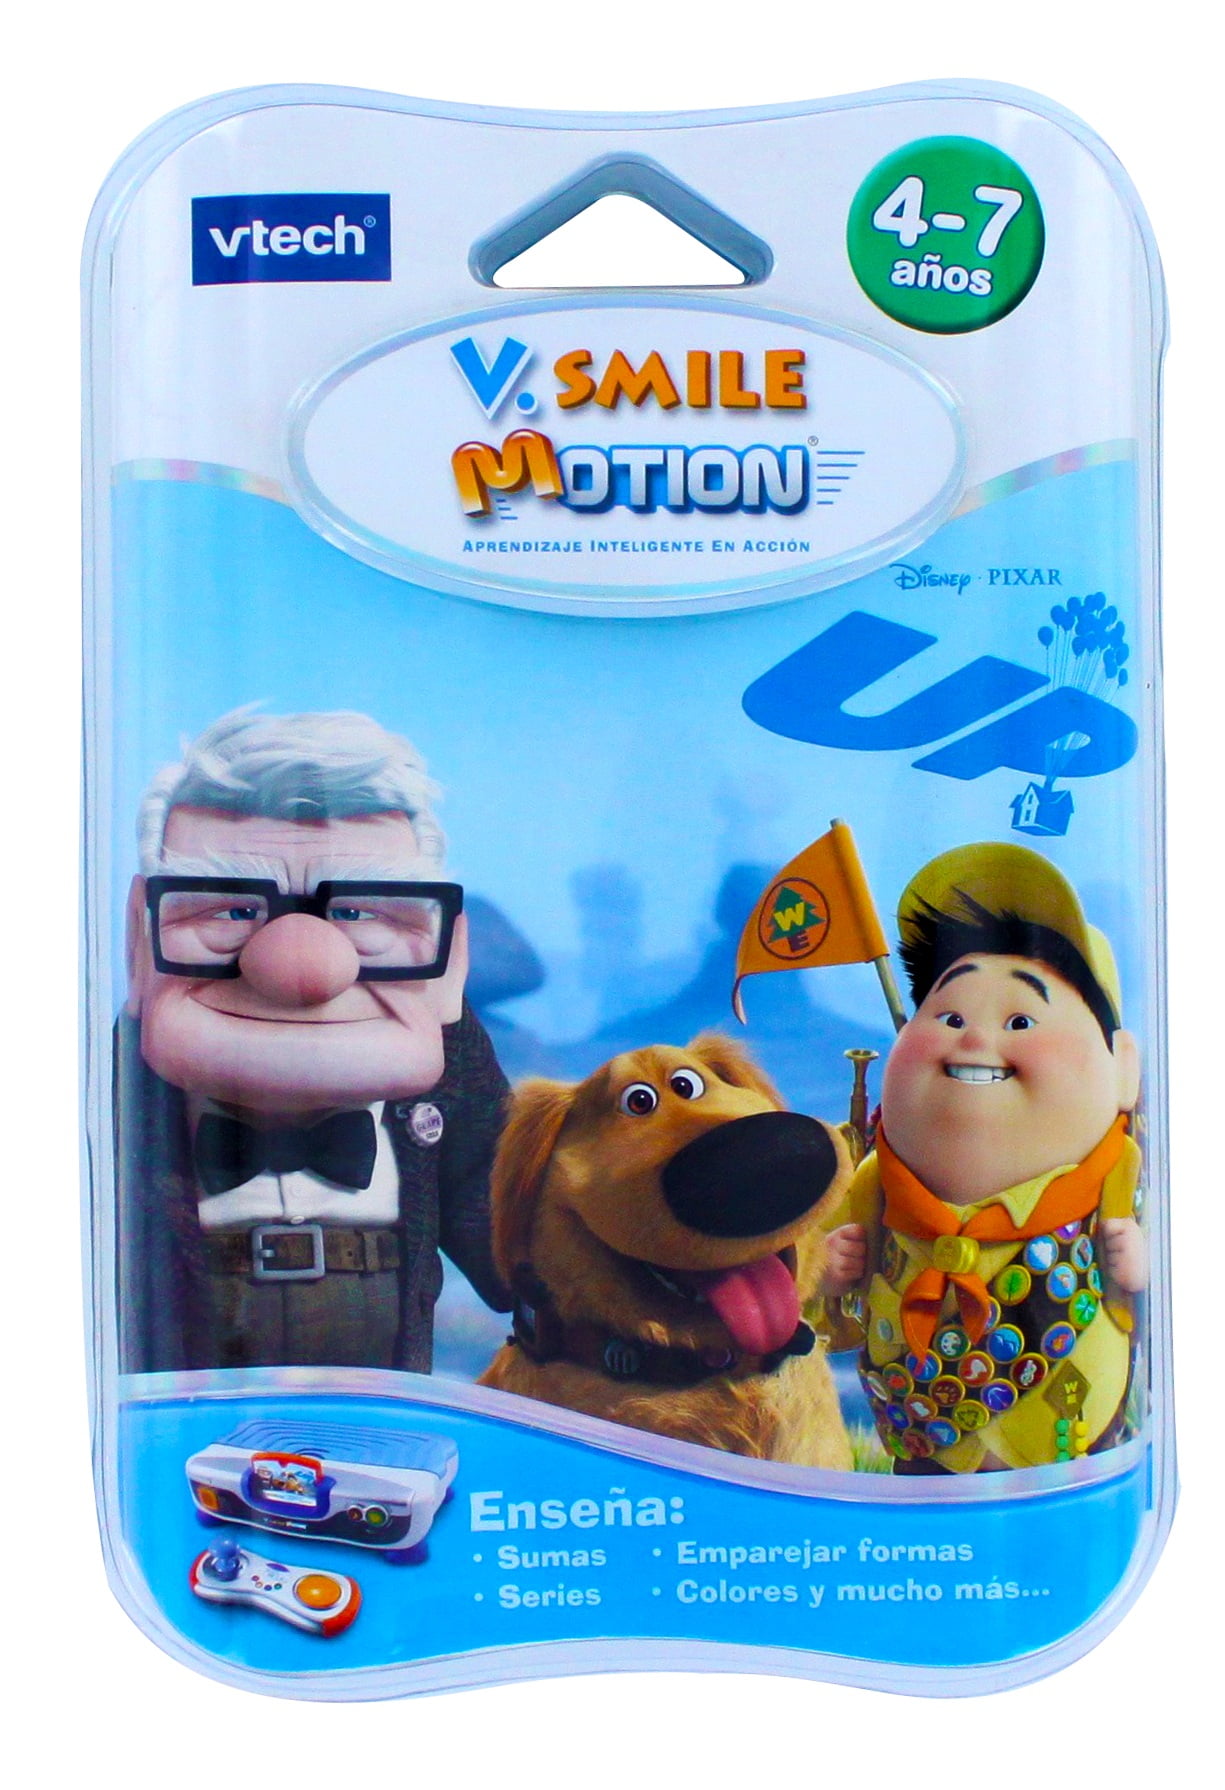 VTech Vsmile Disney Pixar up Ages 4-6 Cartridge for sale online 